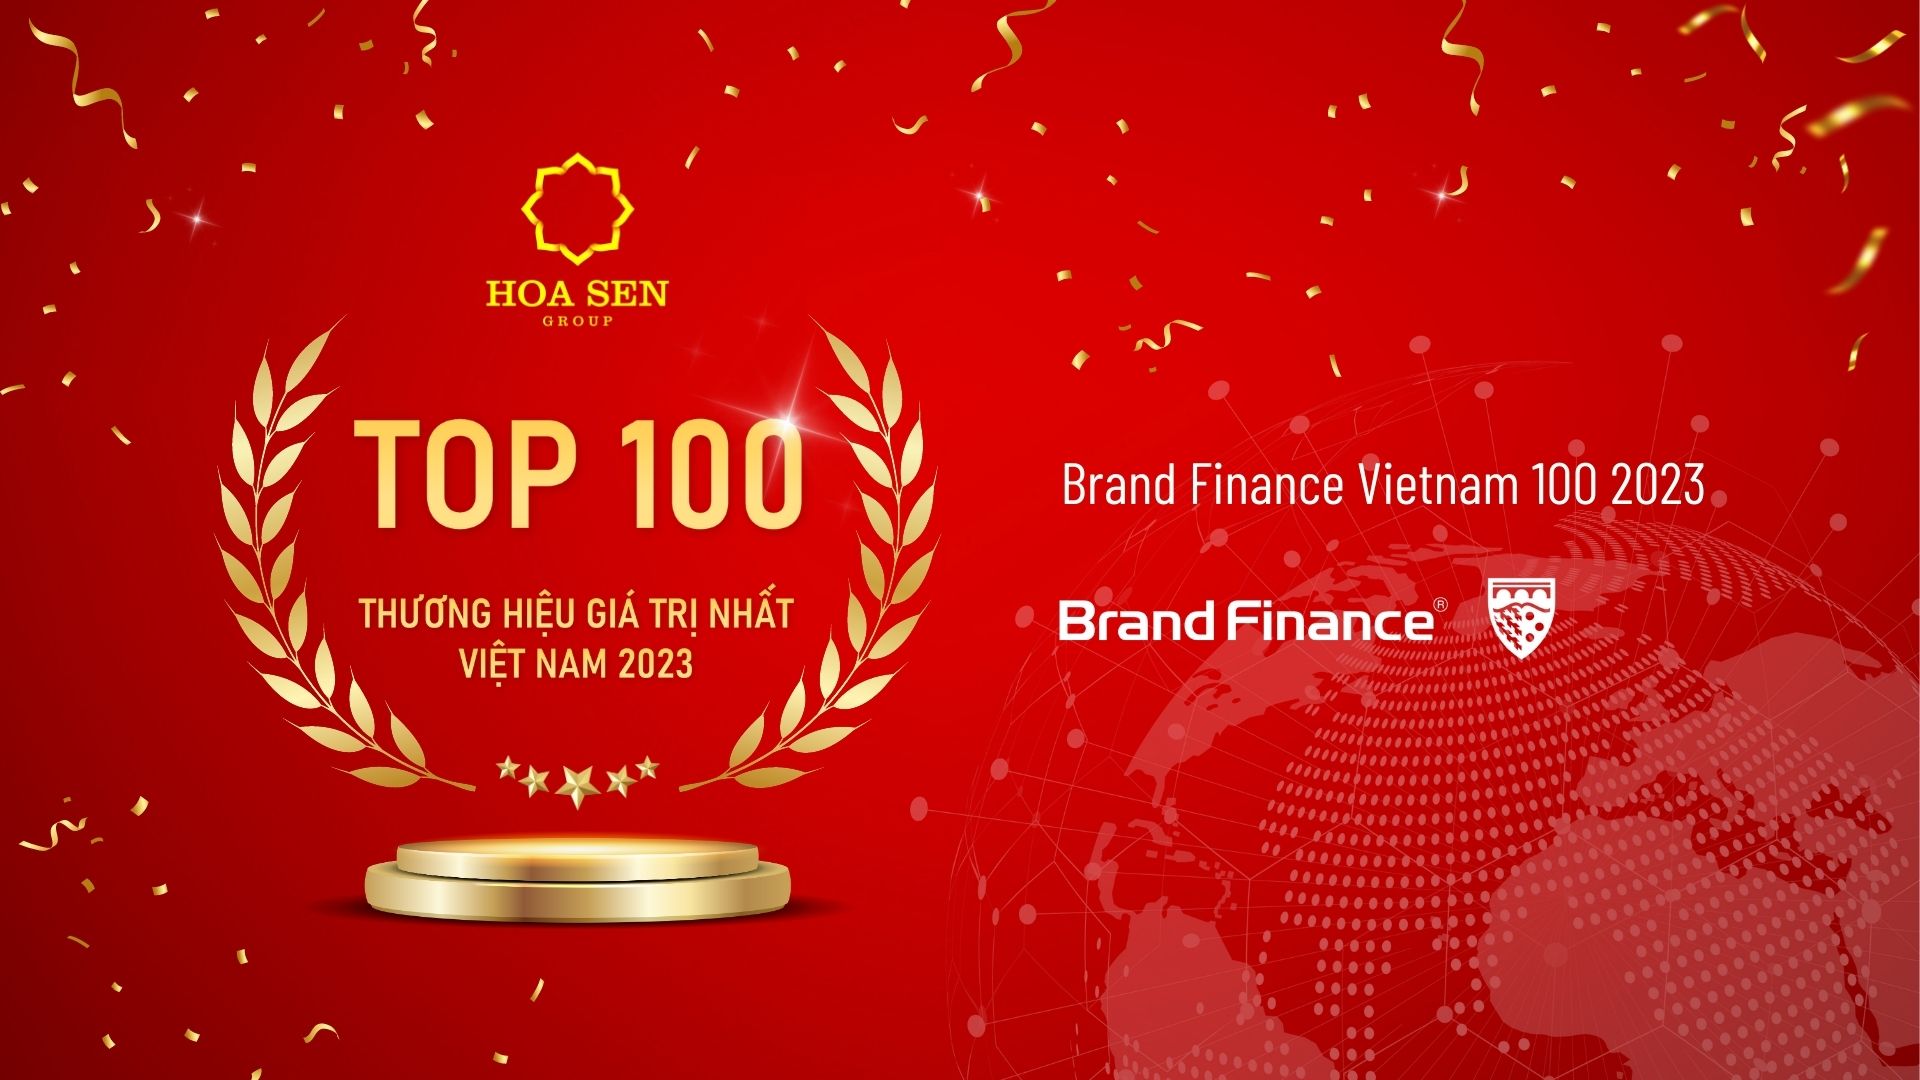 Tập đoàn Hoa Sen được vinh danh 'Top 100 thương hiệu giá trị nhất Việt Nam' lần thứ 9 liên tiếp